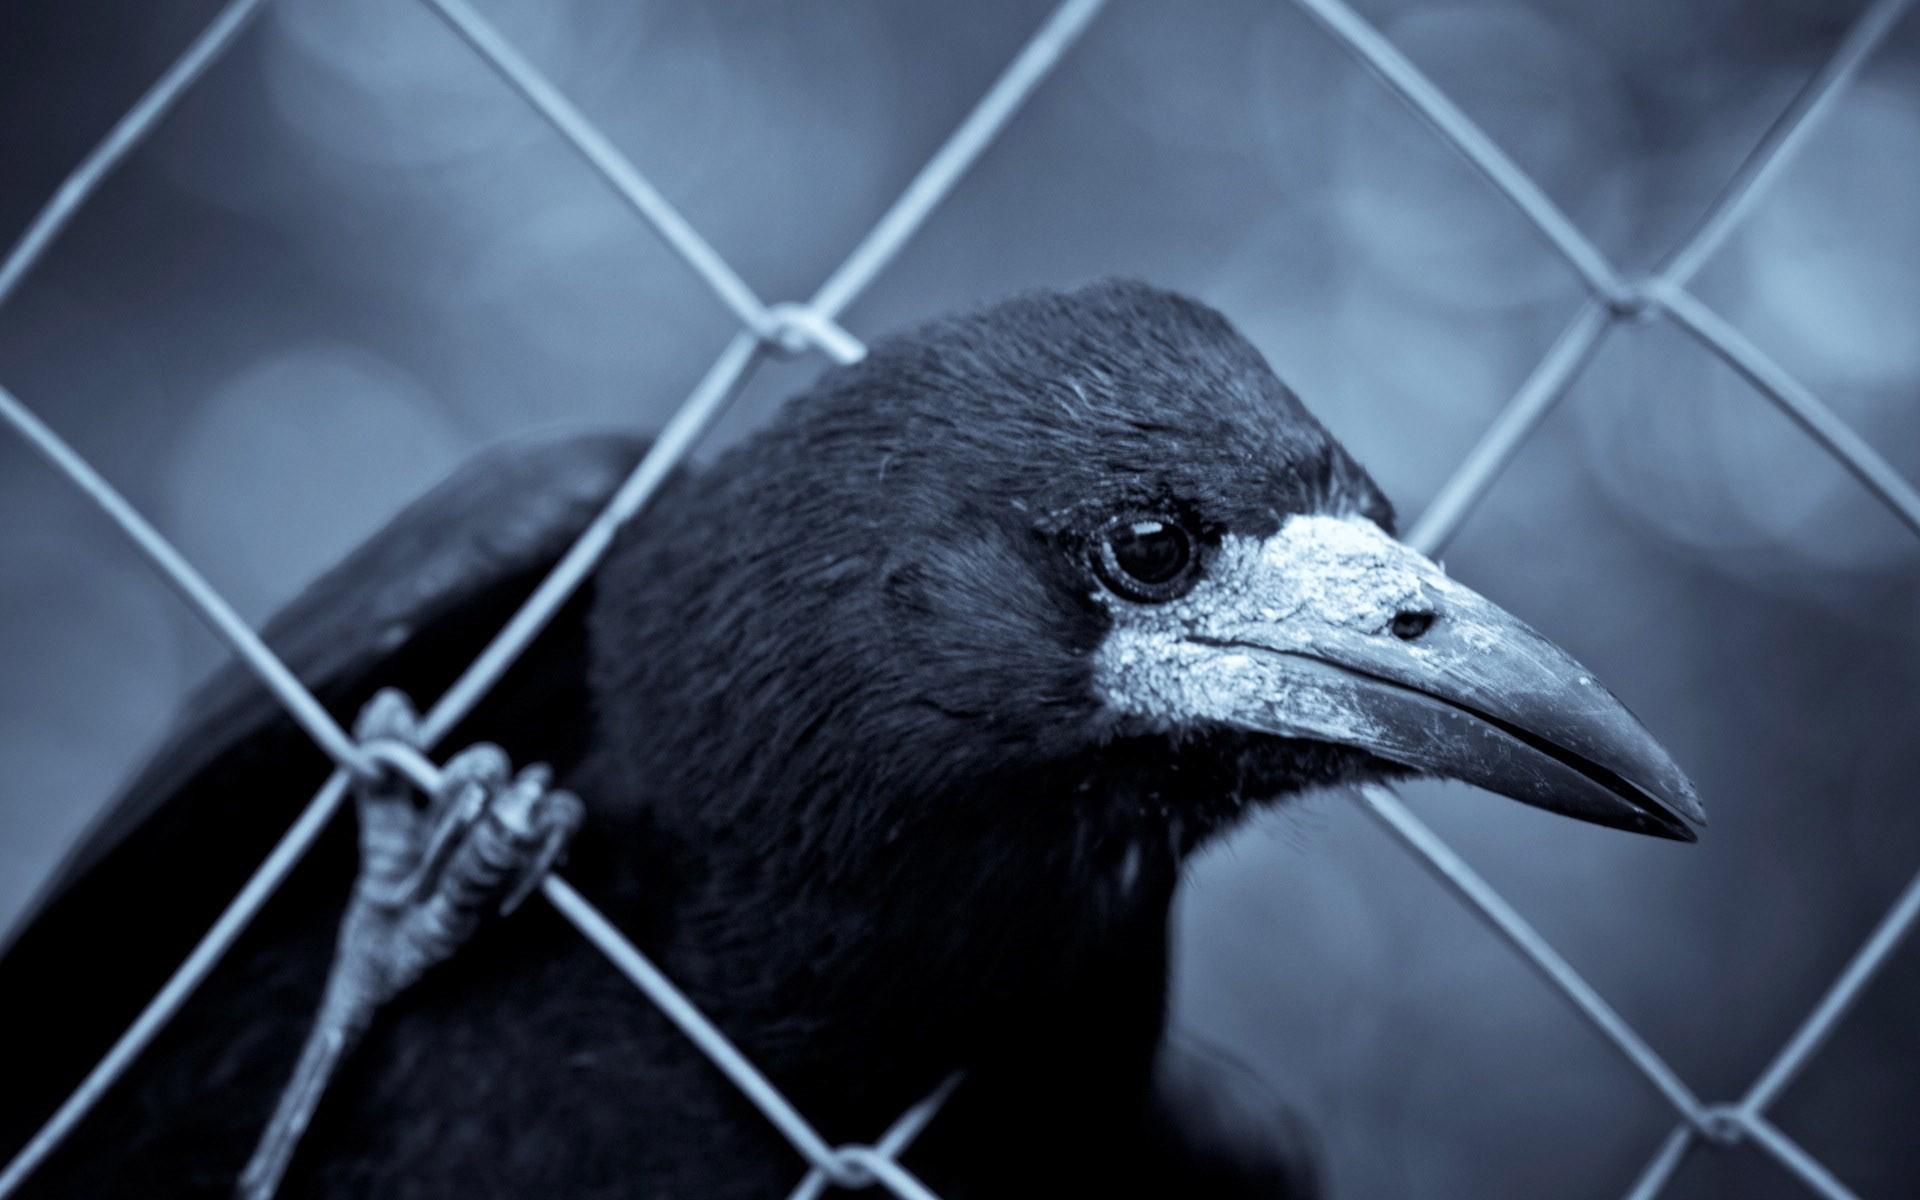 10 多张免费的“丛林乌鸦”和“乌鸦”照片 - Pixabay